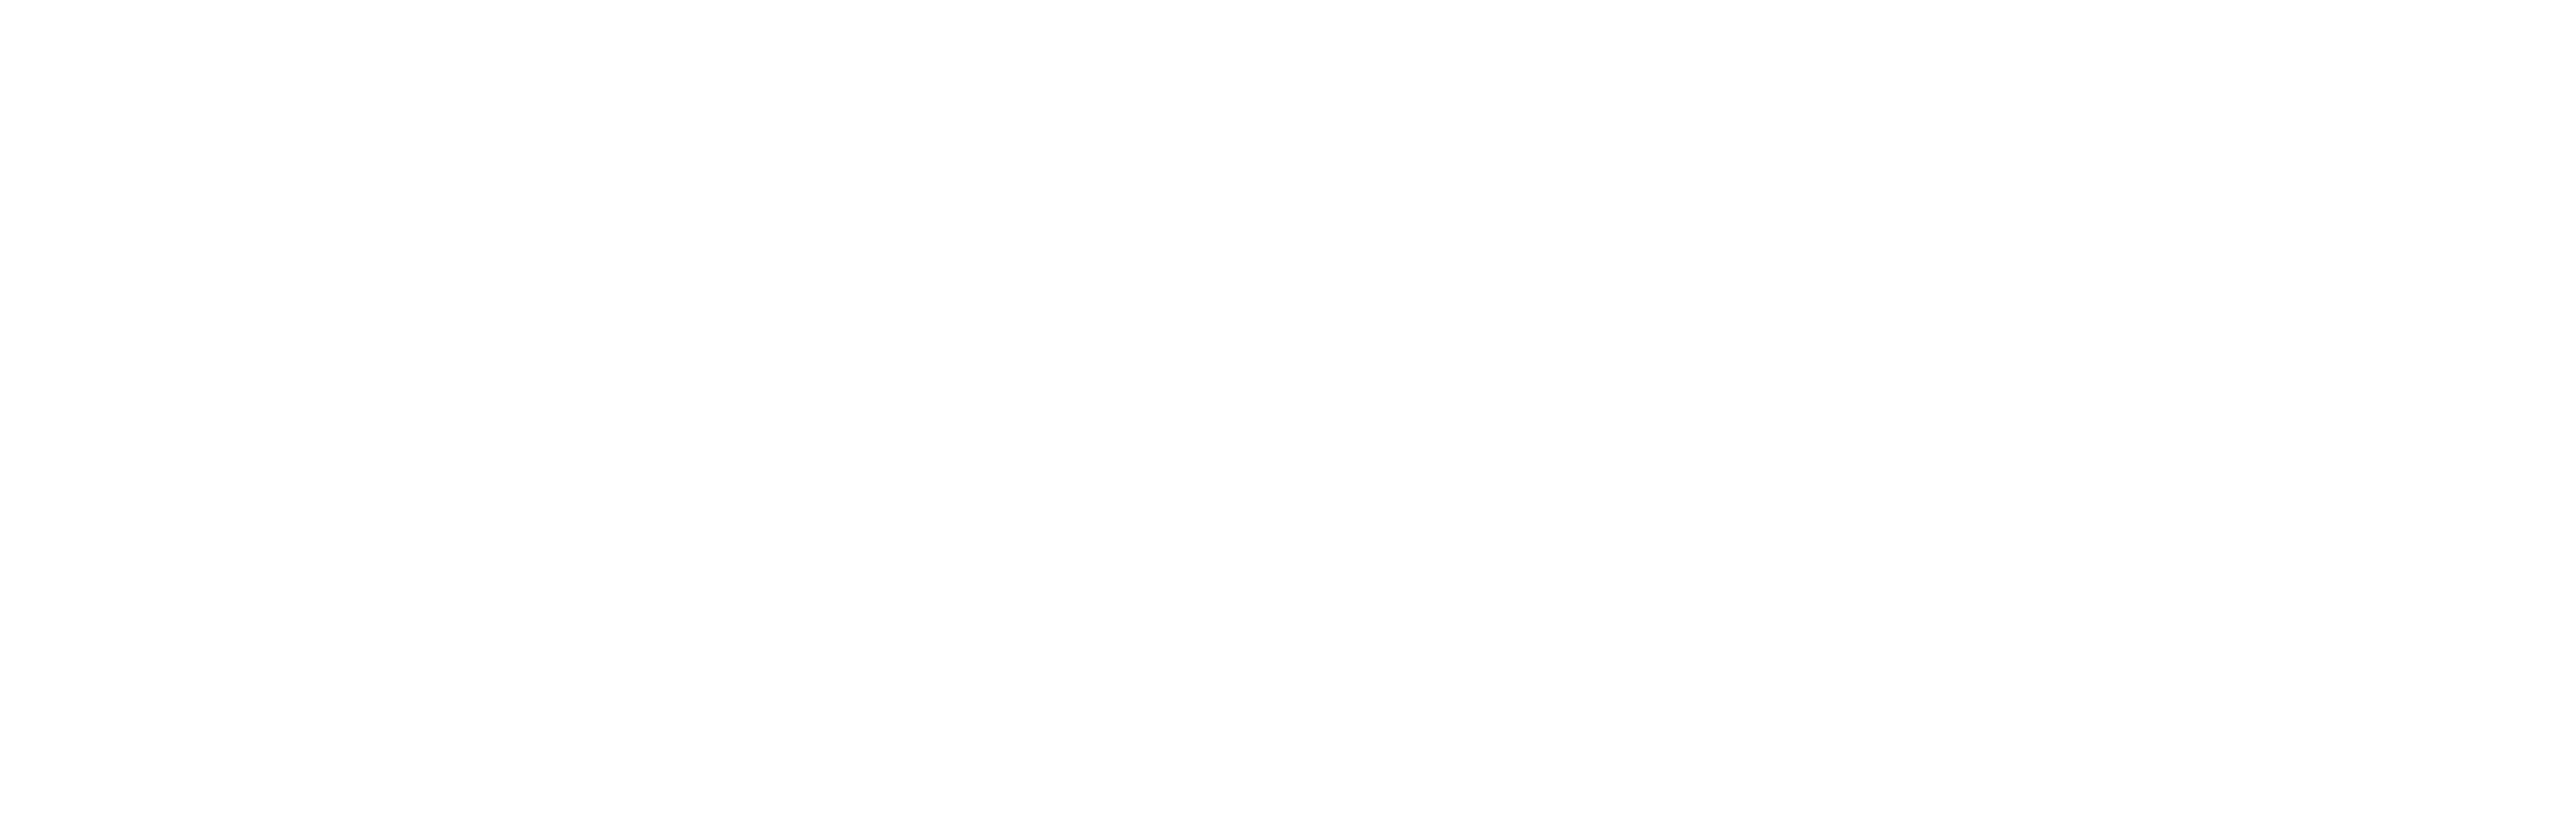 Finimagen_logo